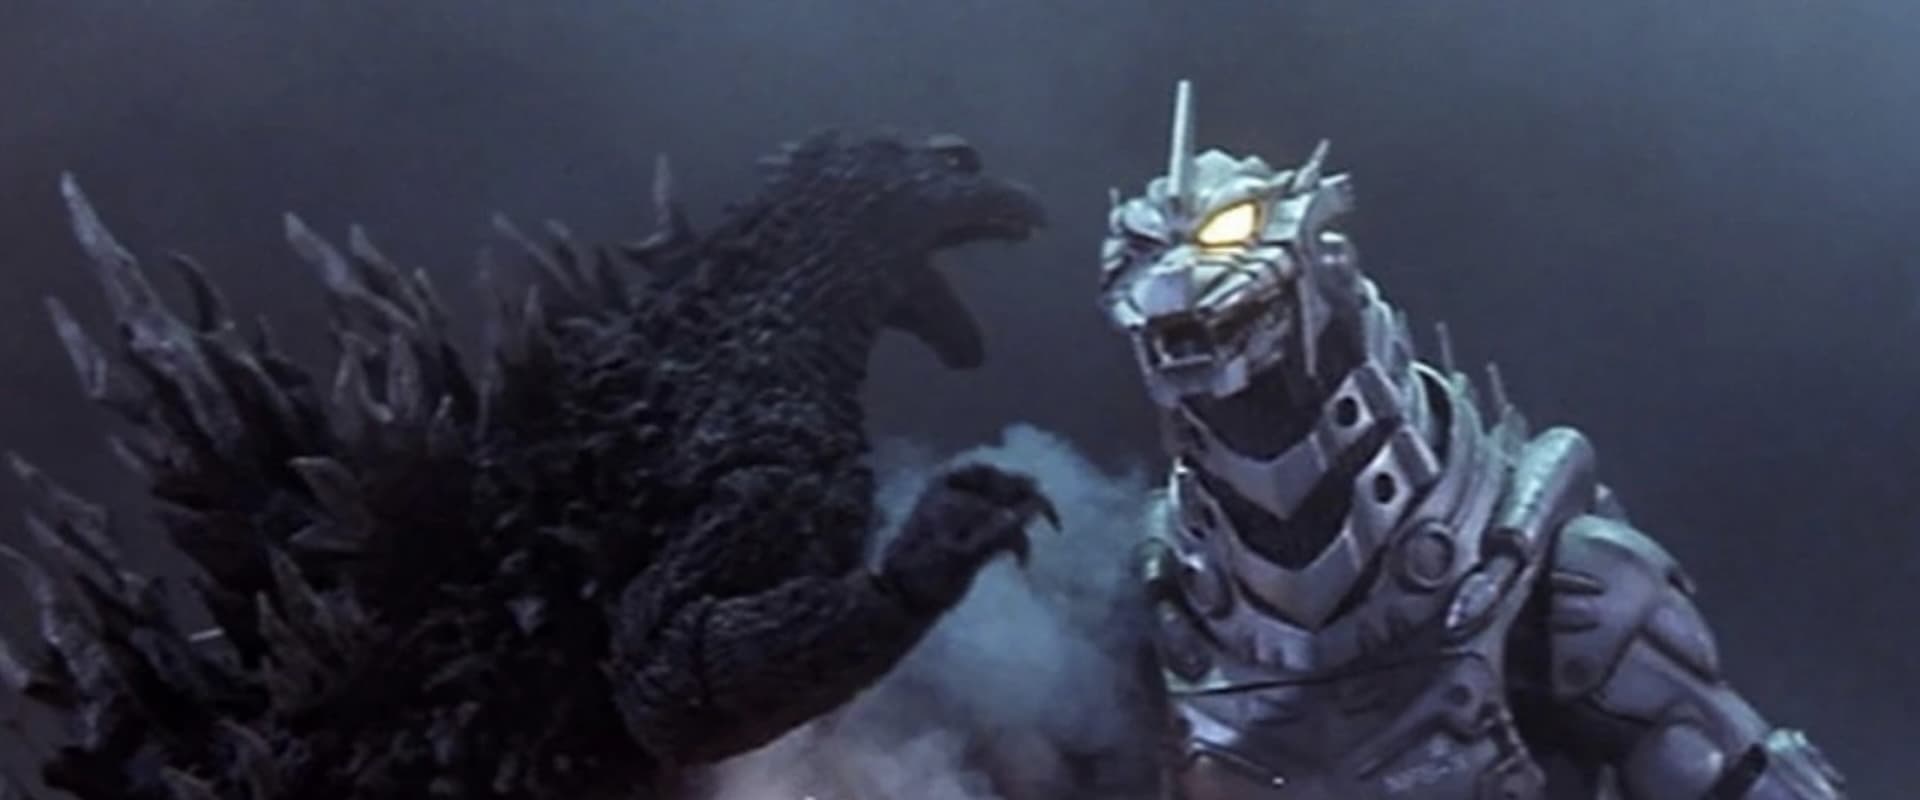 Godzilla Against MechaGodzilla